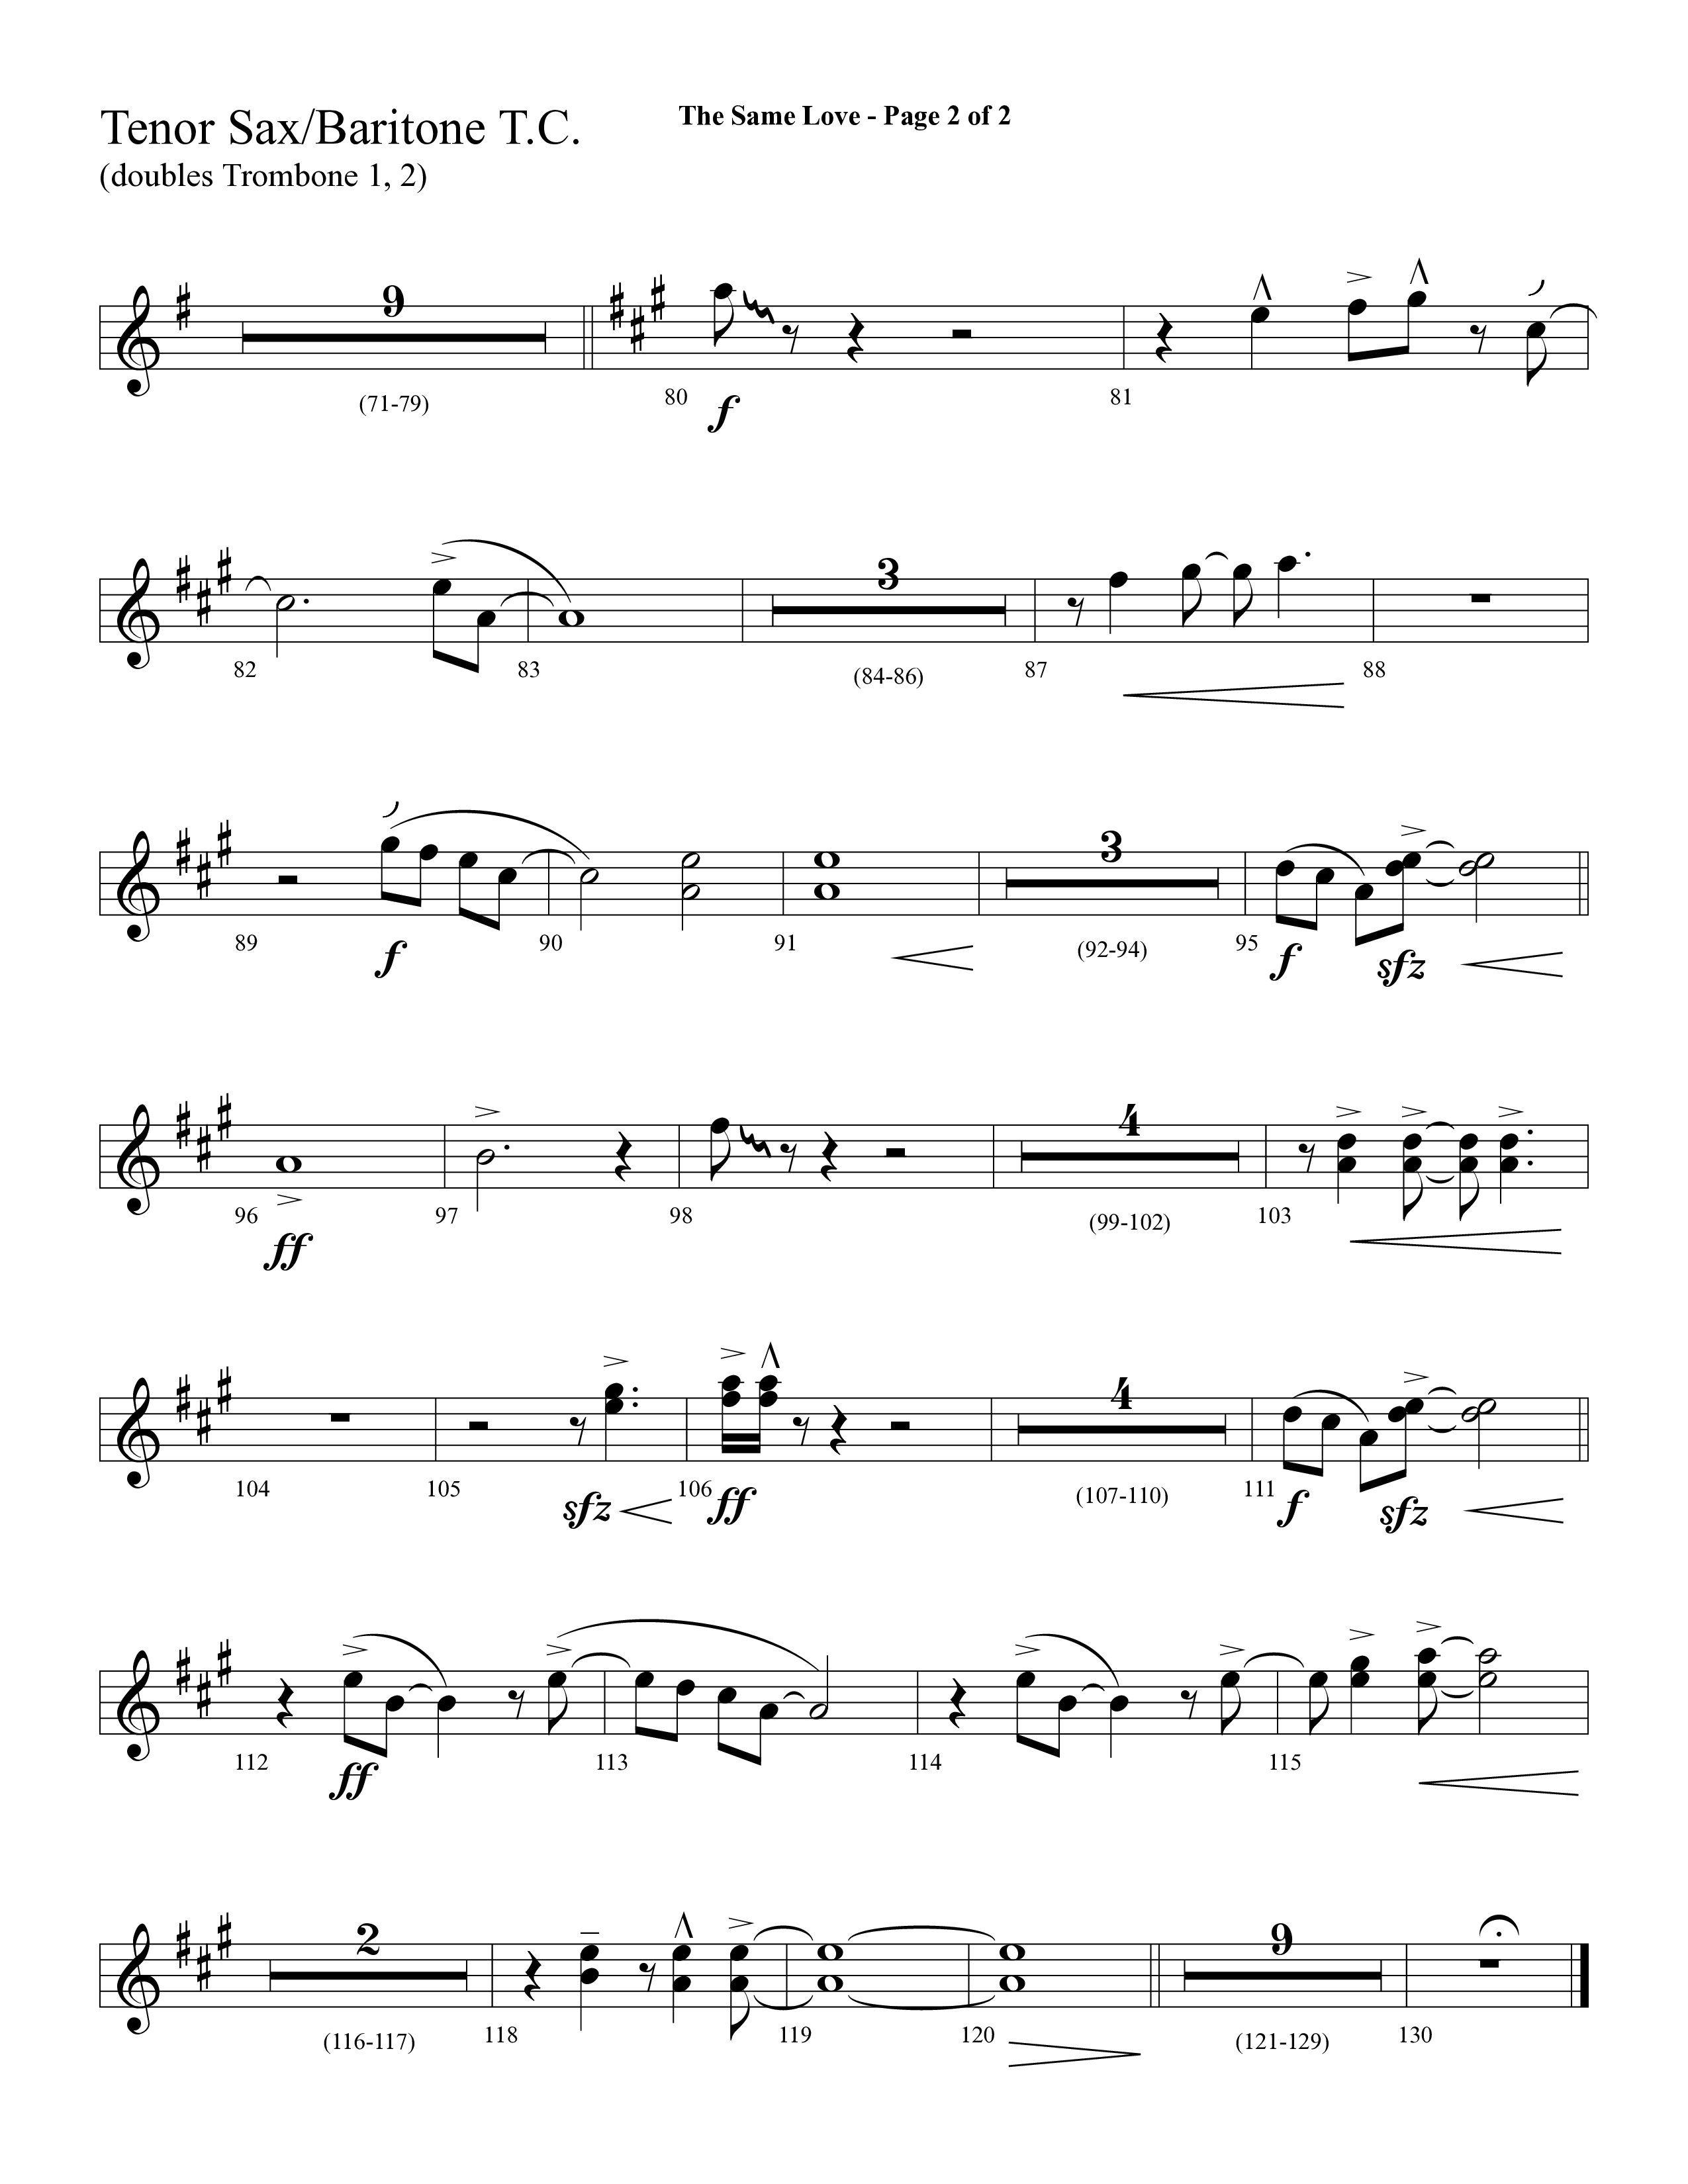 The Same Love (Choral Anthem SATB) Tenor Sax/Baritone T.C. (Lifeway Choral / Arr. Cliff Duren)